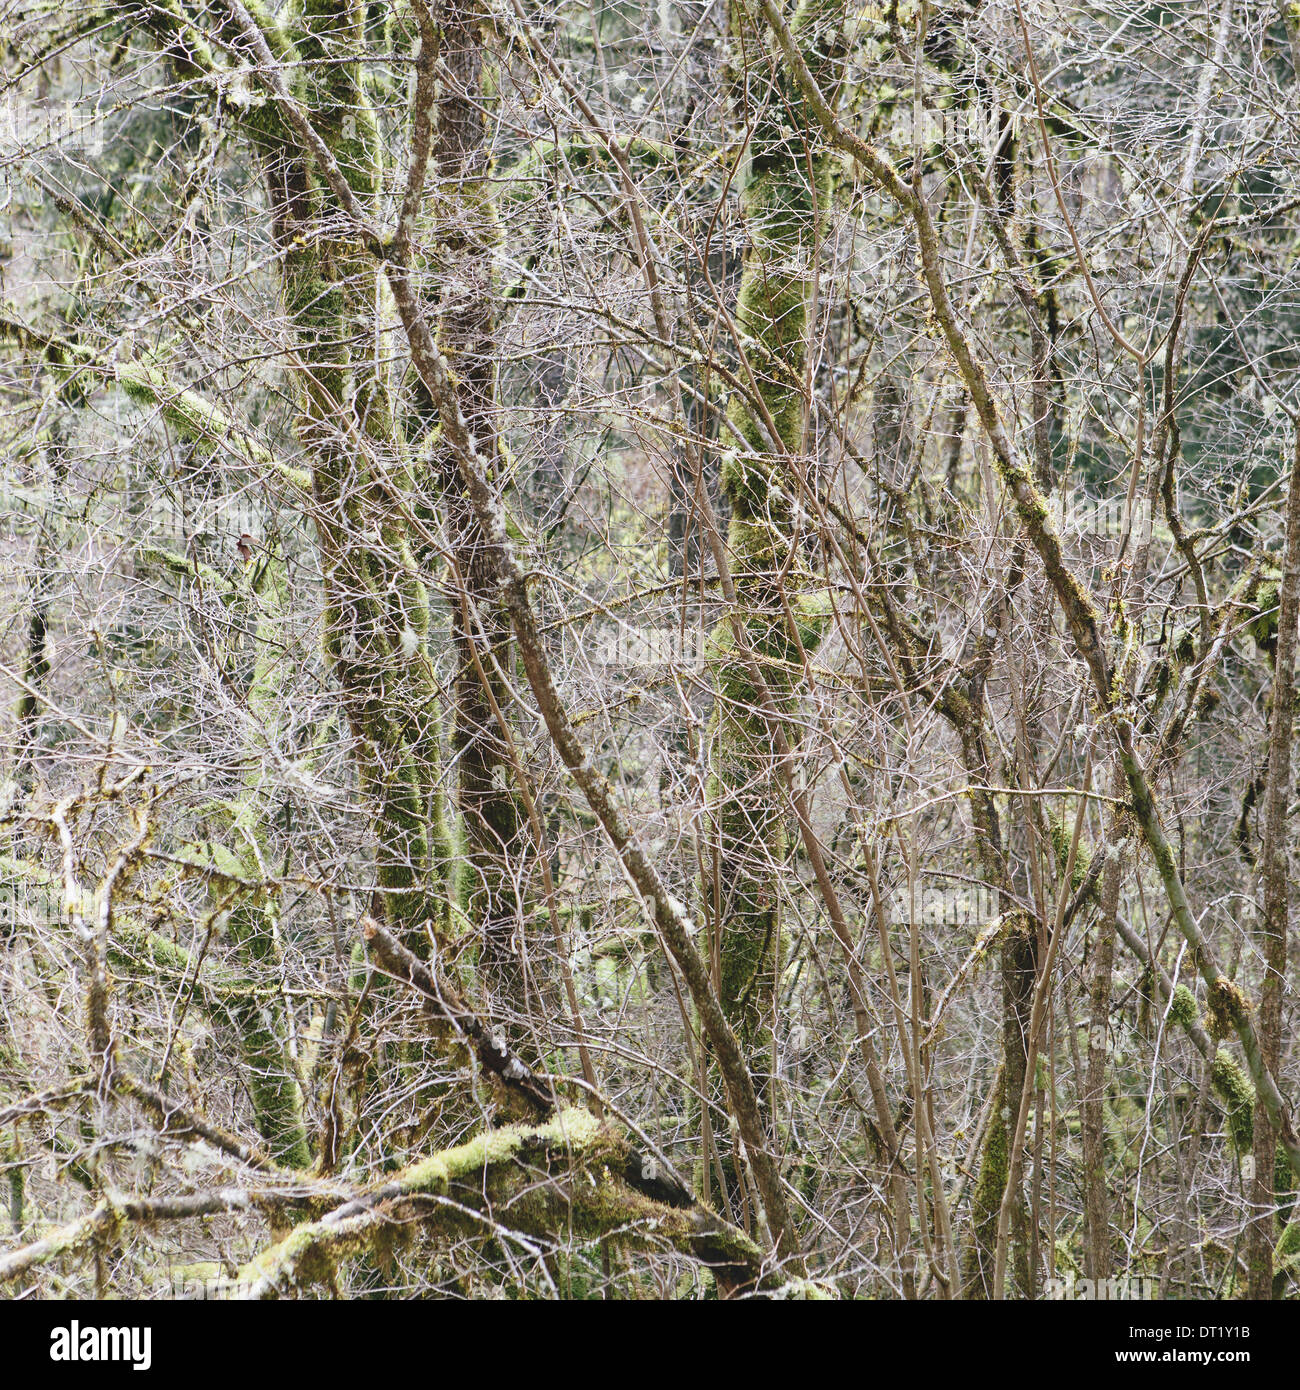 Ein dichter Wald von grünem Moos bedeckt Bäume der Rebe Ahorn Erle Zeder und Tanne in einem National Forest im Washington USA Stockfoto